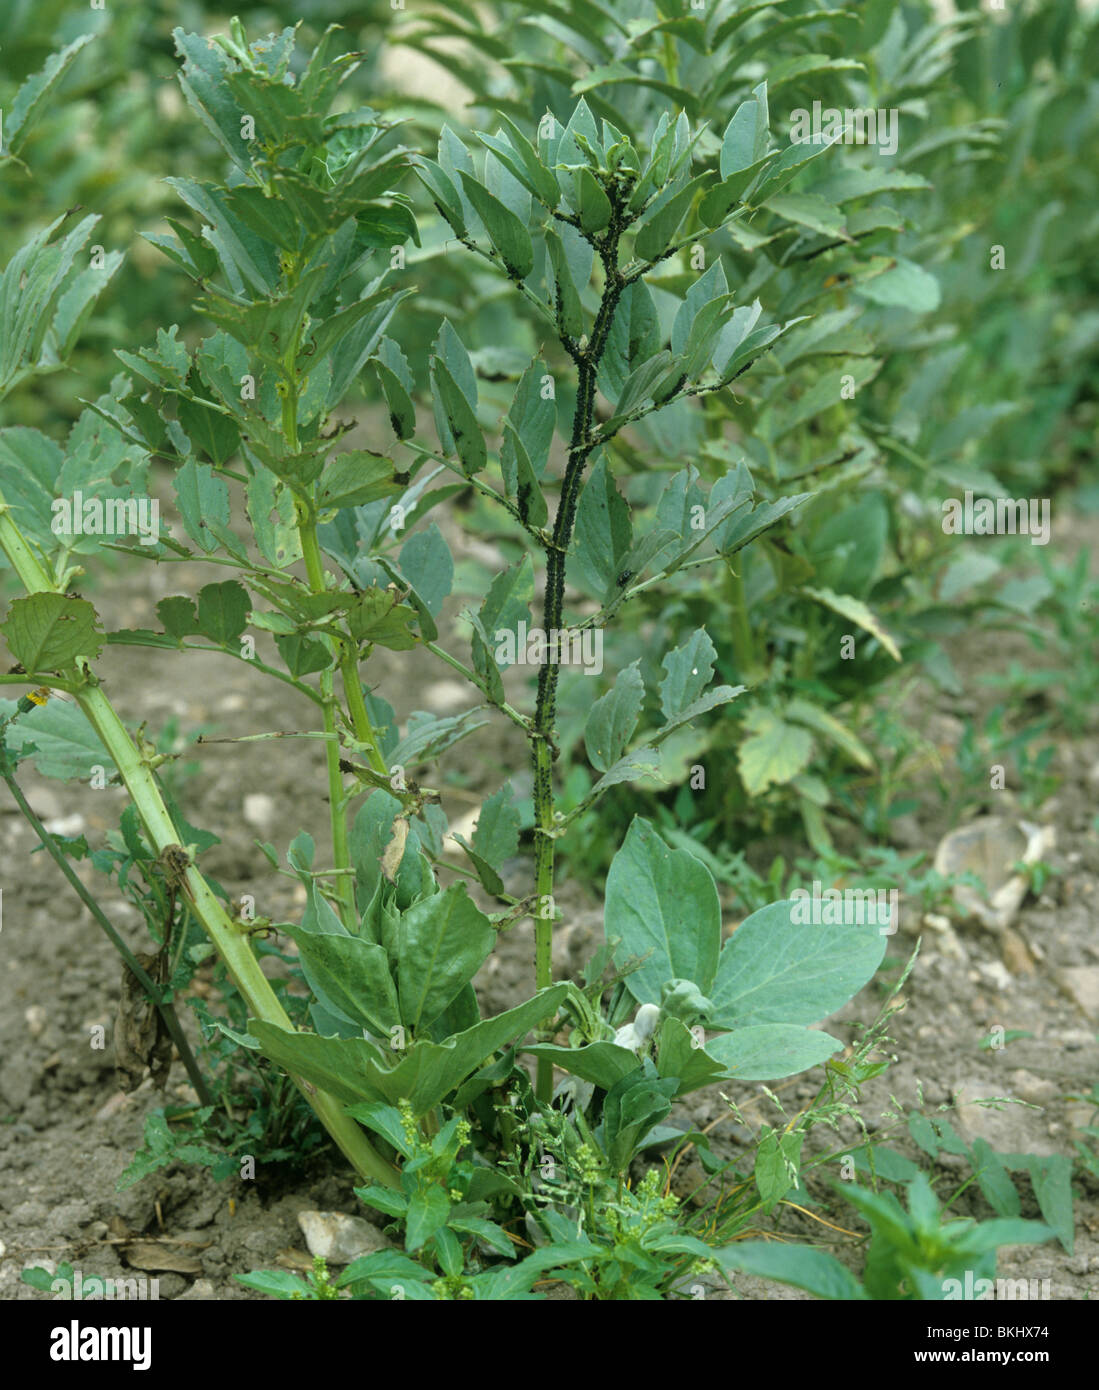 Le puceron noir de la fève (Aphis fabae) infestation sur les tiges des plants de haricots sur le terrain Banque D'Images